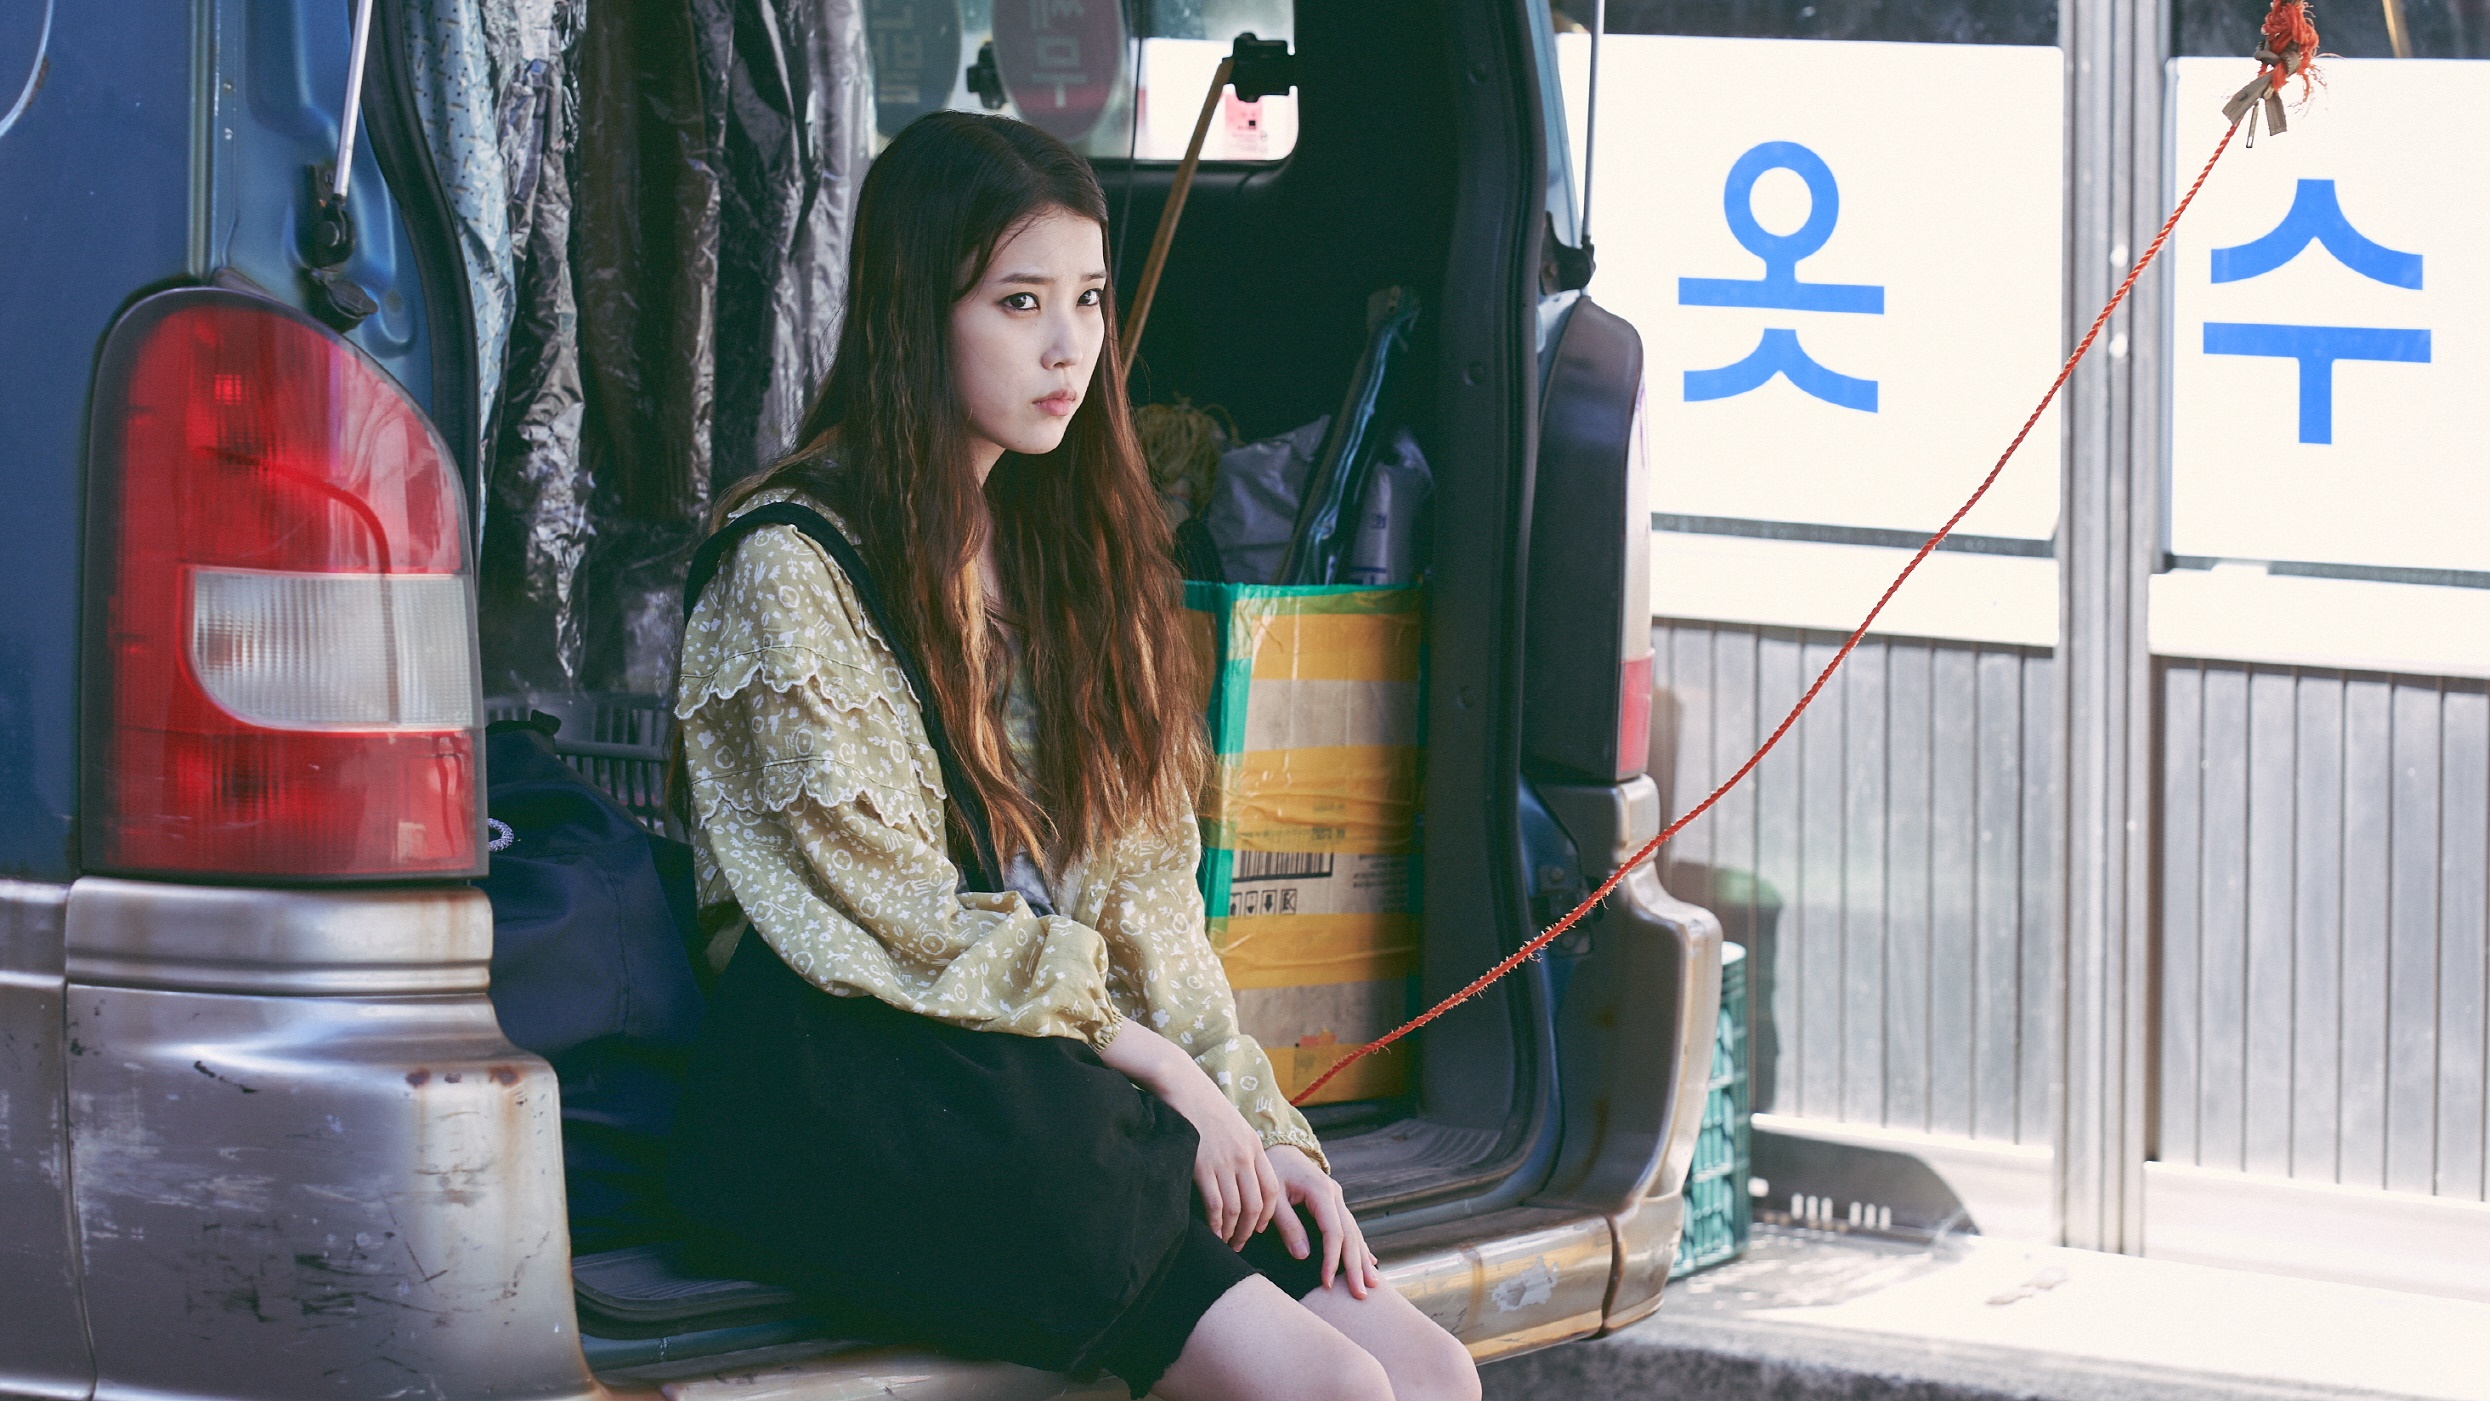 Island  Tudo sobre o novo drama coreano com Cha Eun Woo (ASTRO) - Elfo  Livre